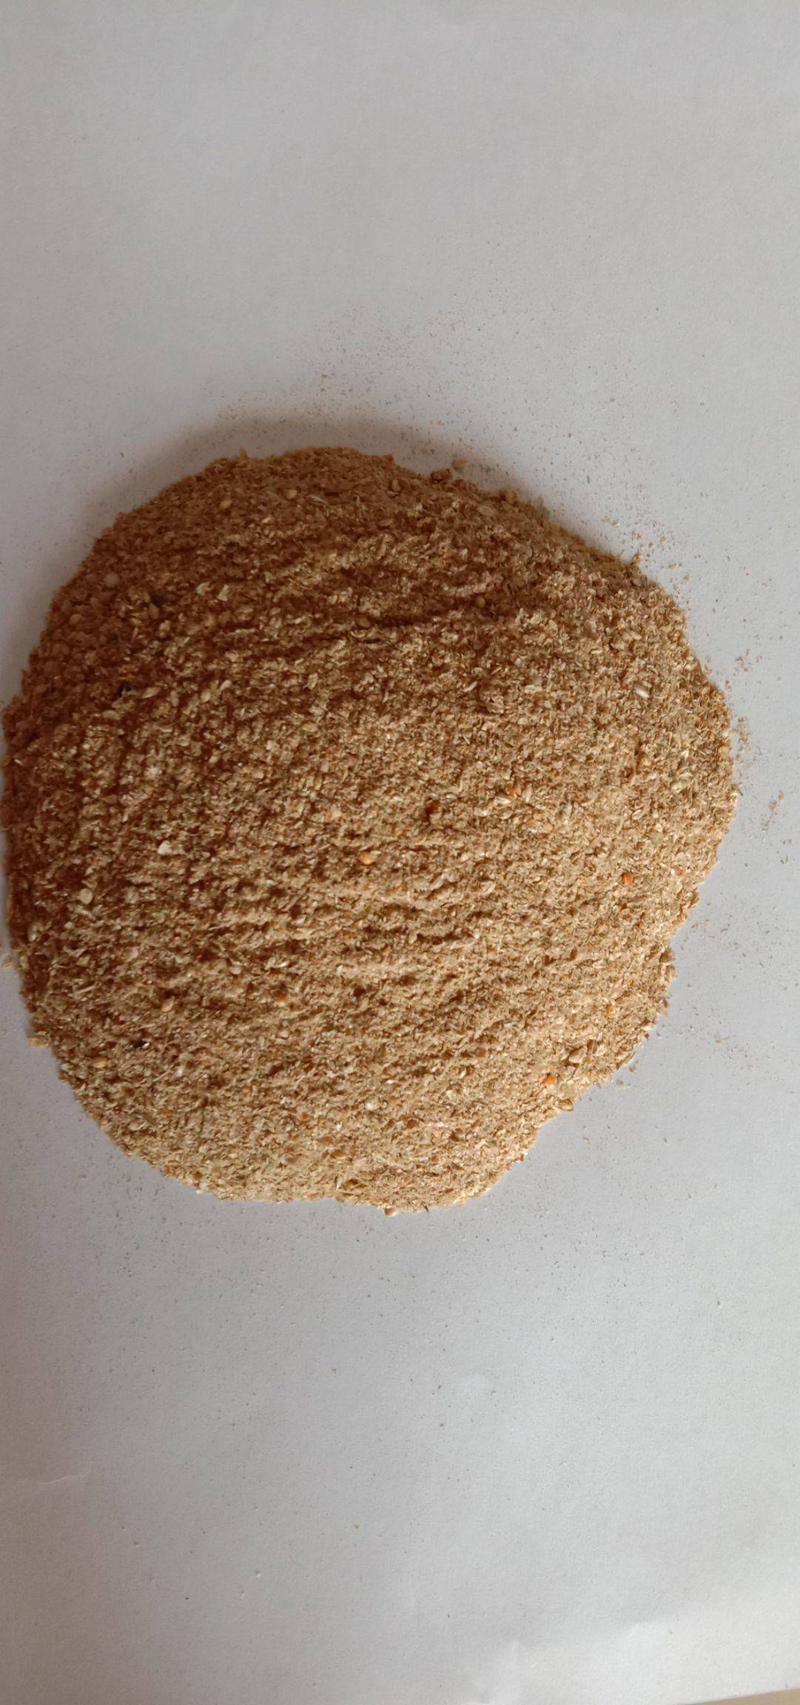 小米糠鸡鸭鹅牛羊饲料原料高蛋白小米糠质量保证